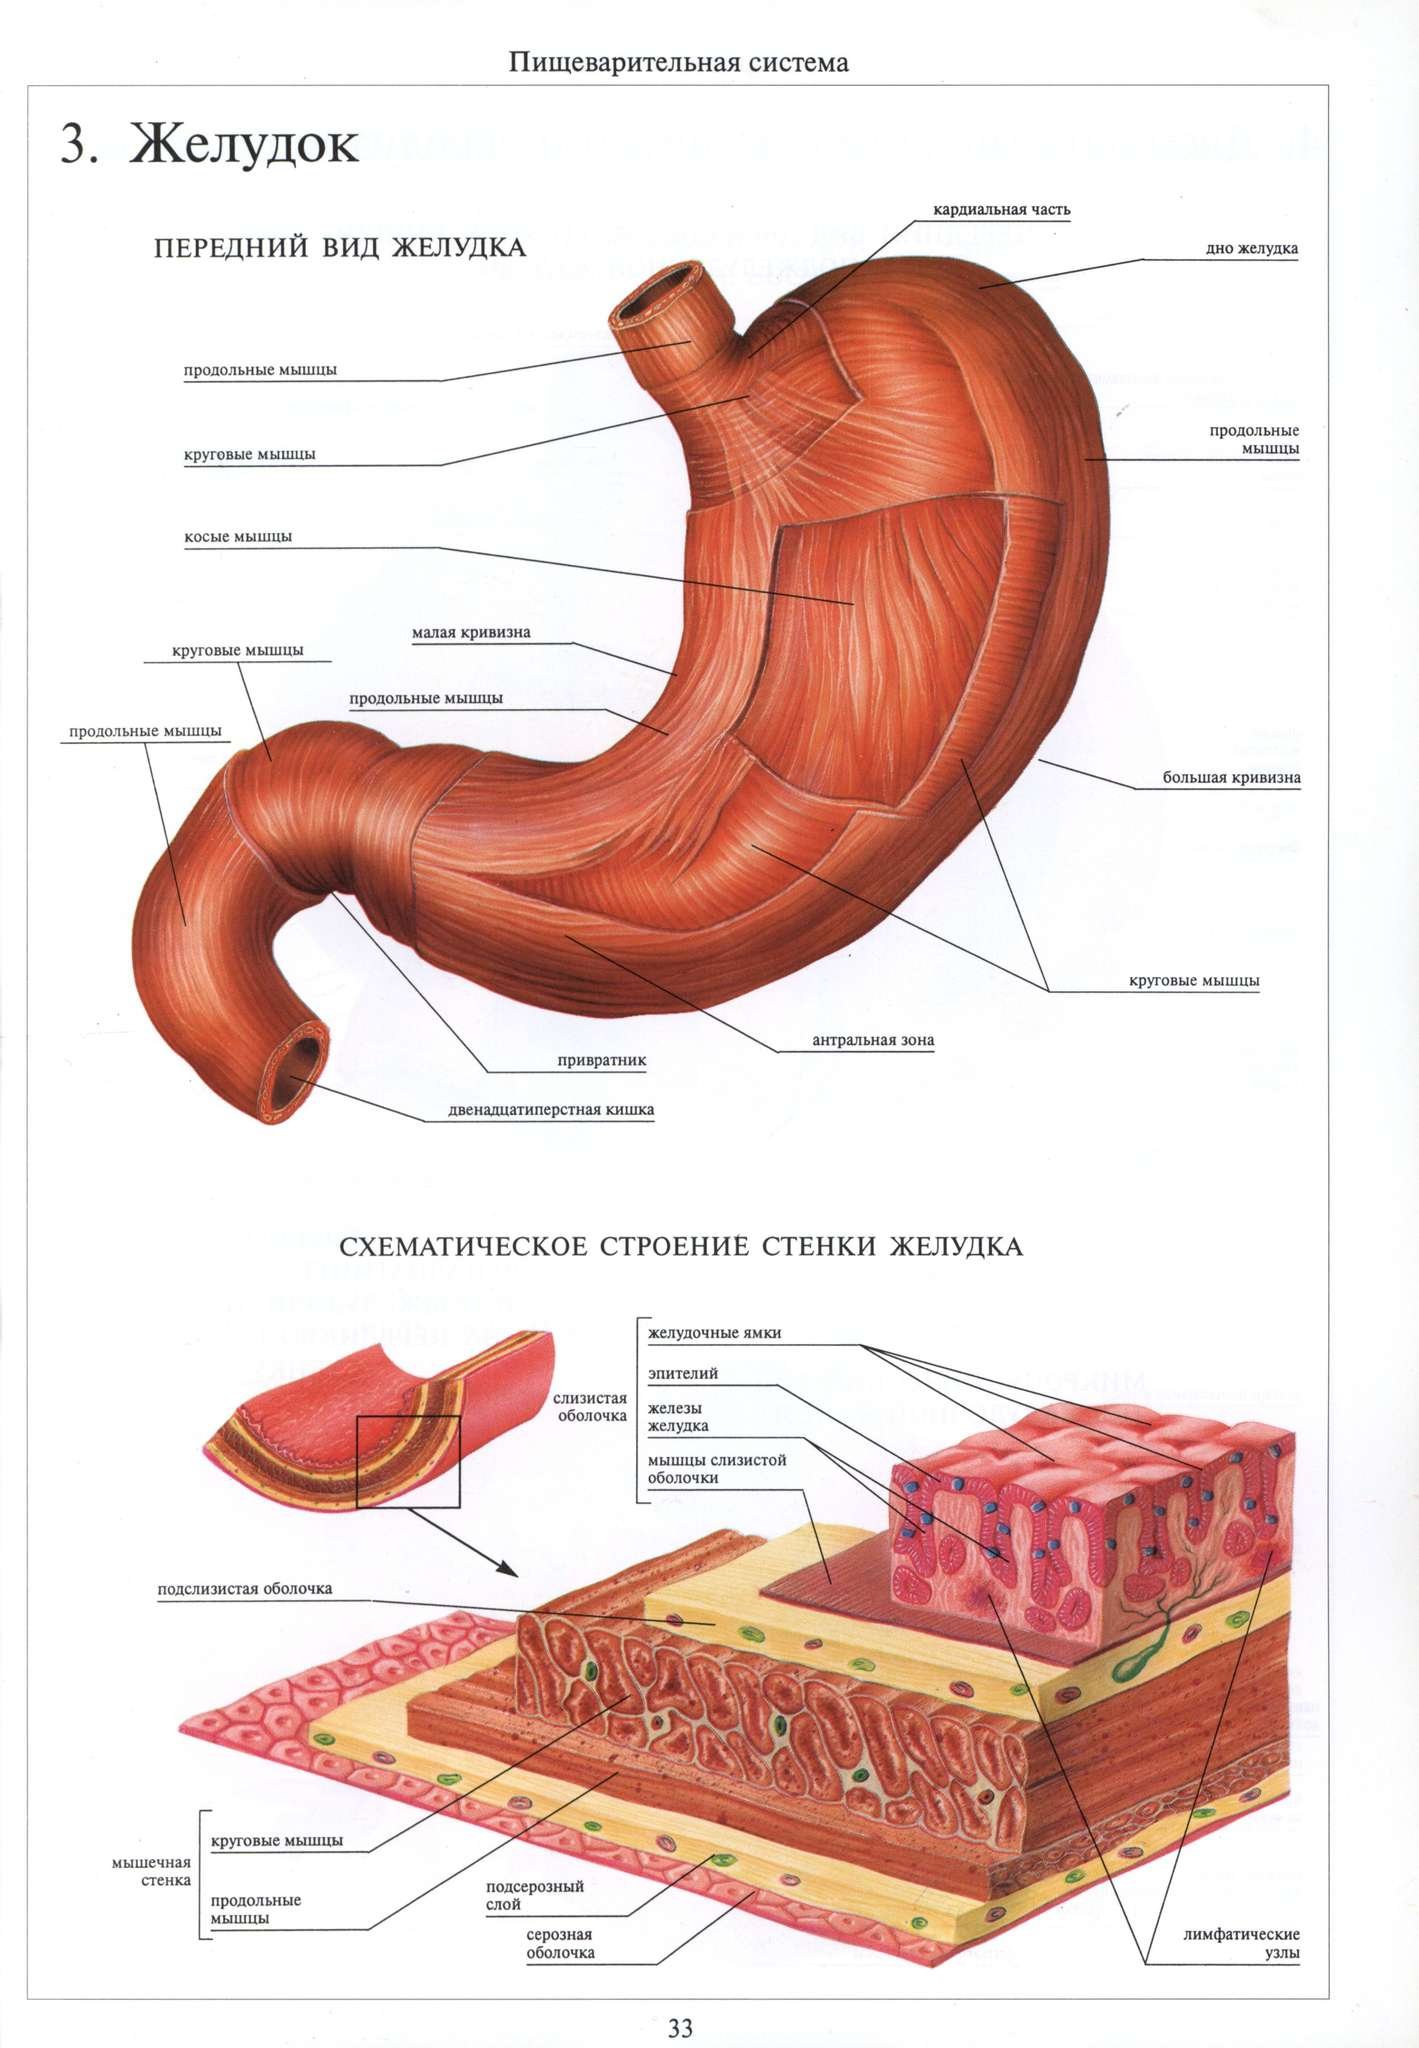 Функция оболочек желудка. Внутреннее строение желудка. Слои мышечной оболочки желудка. Схема строения желудка в разрезе. Строение серозной оболочки желудка.